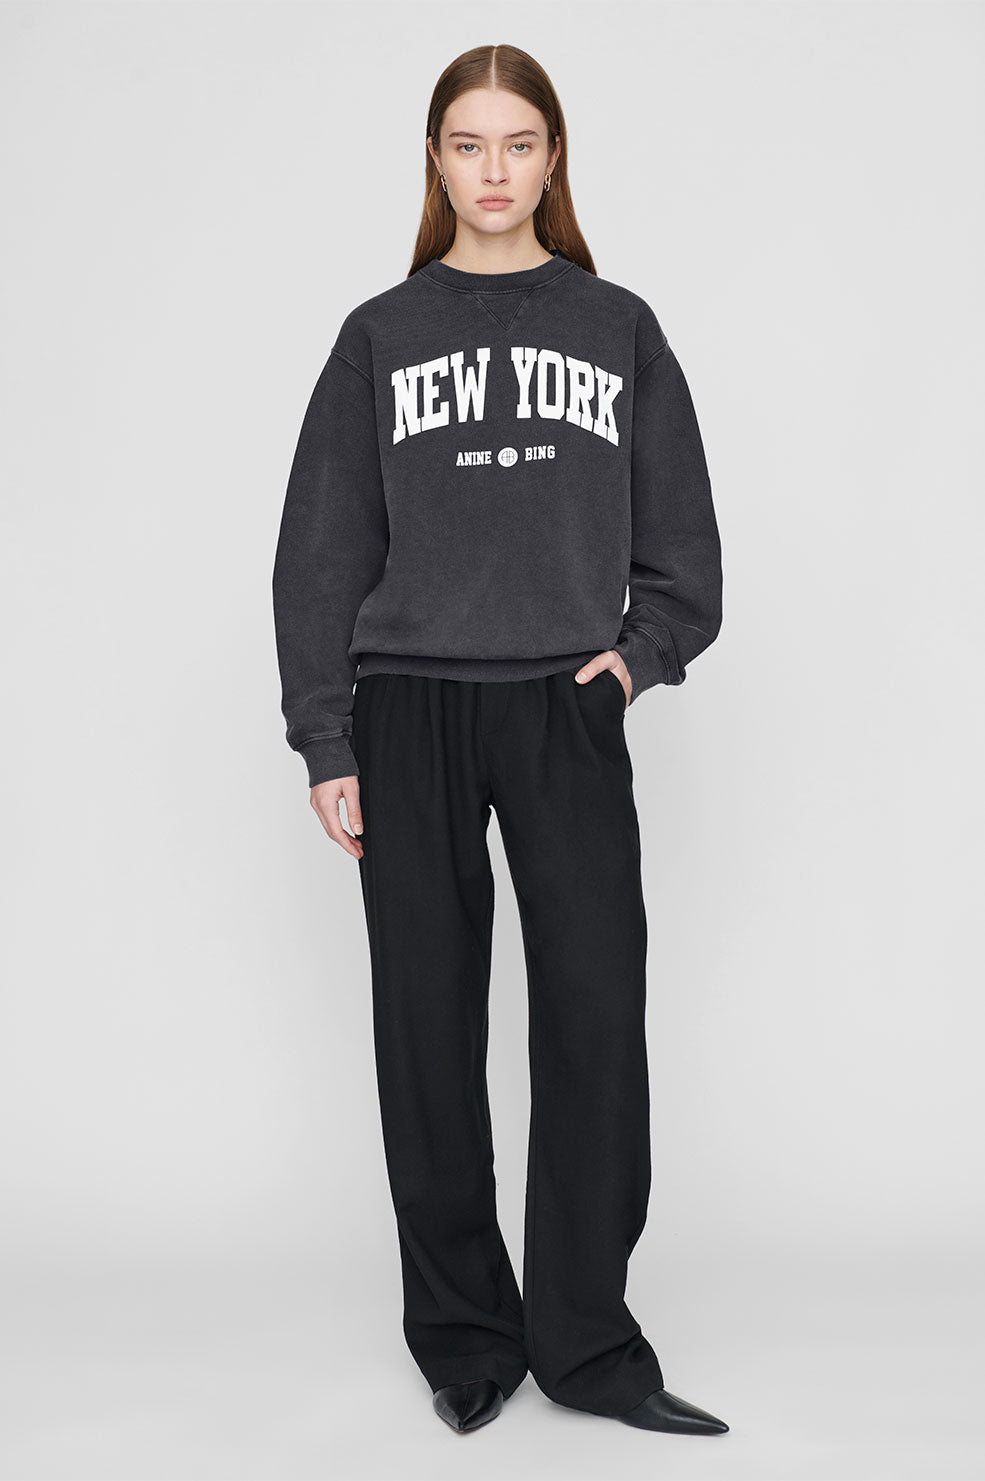 Ramona Sweatshirt University New York - Washed Black